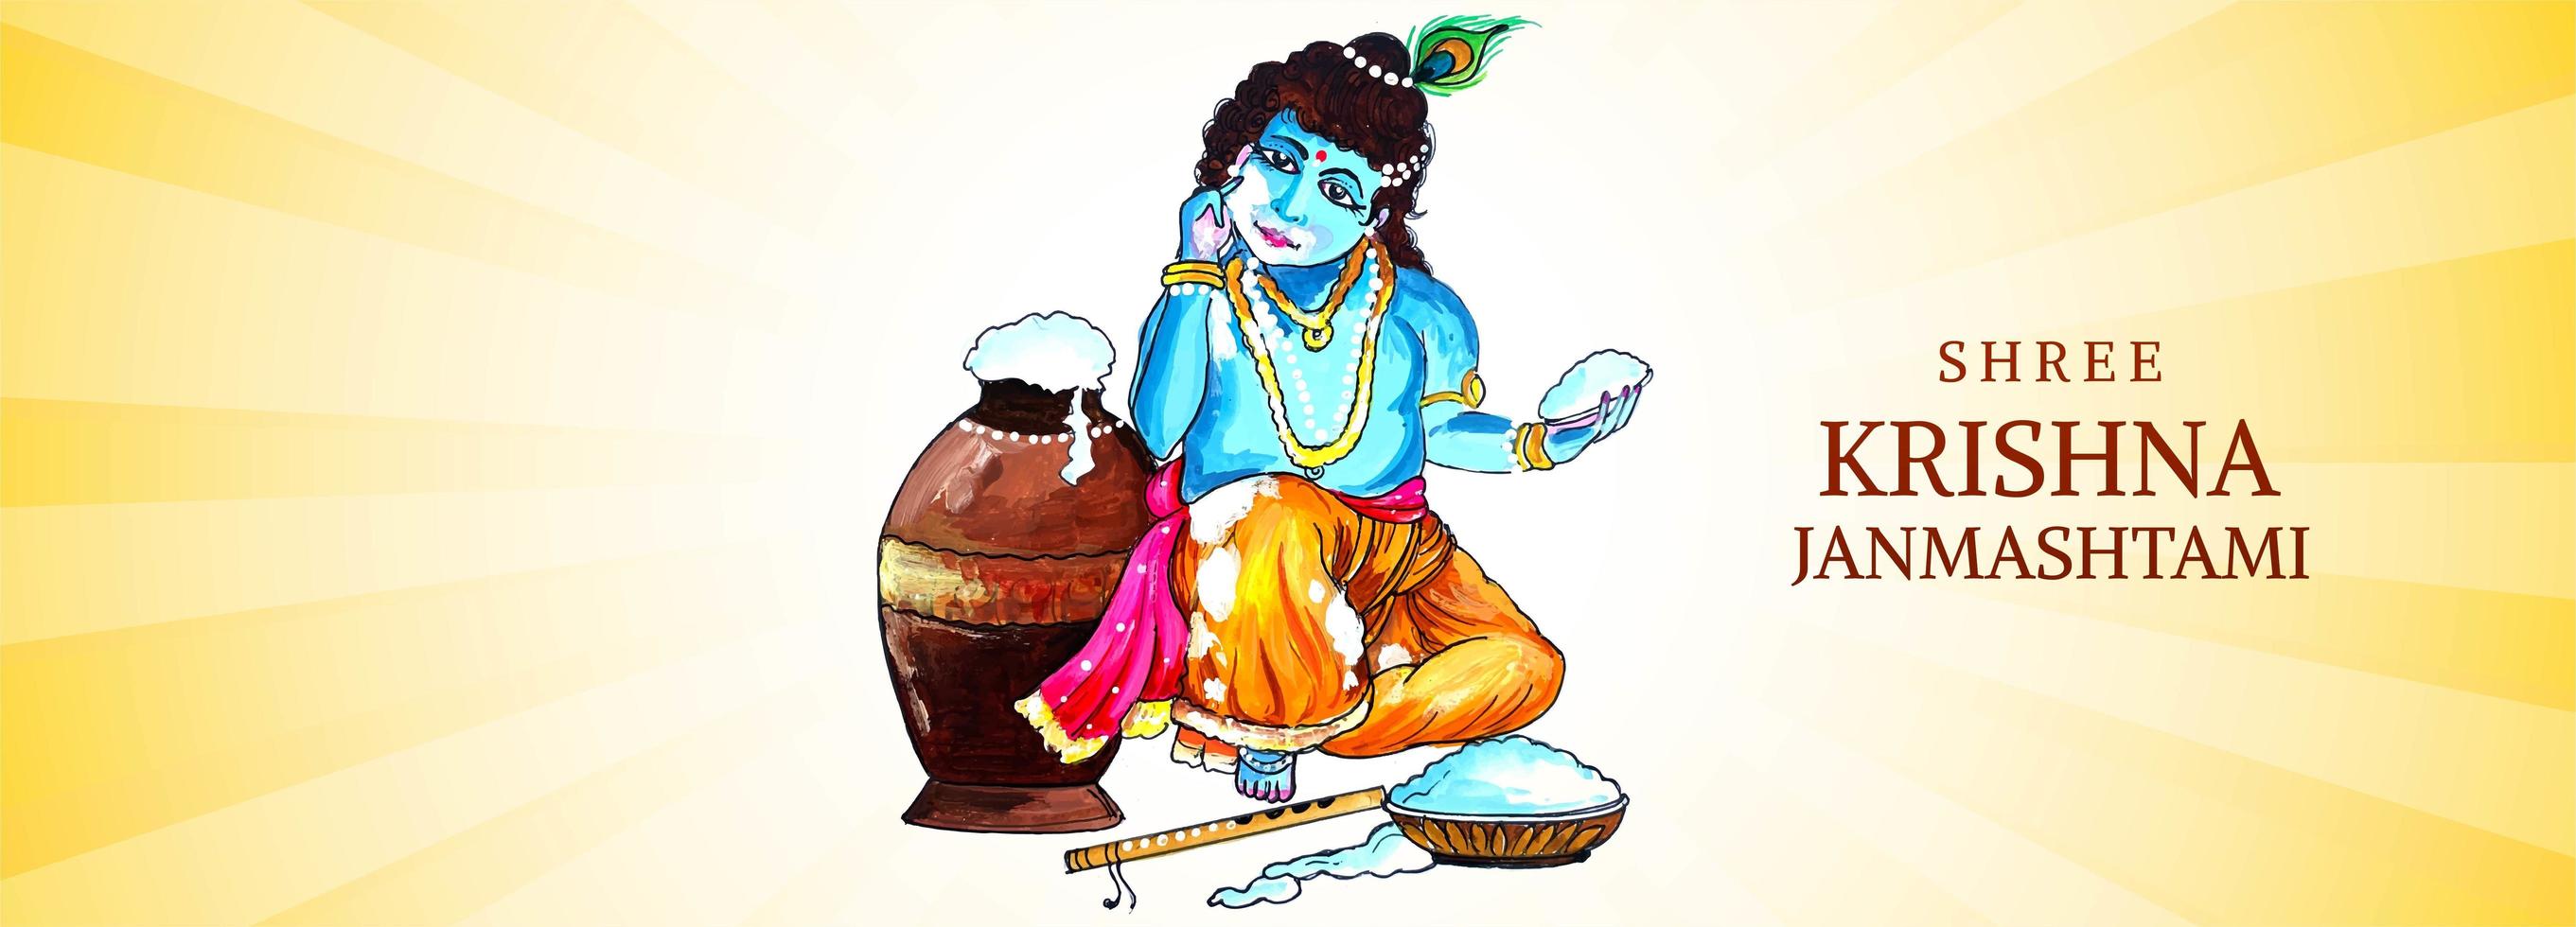 Lord Krishna Holding Handful of Porridge Janmashtami Banner vector